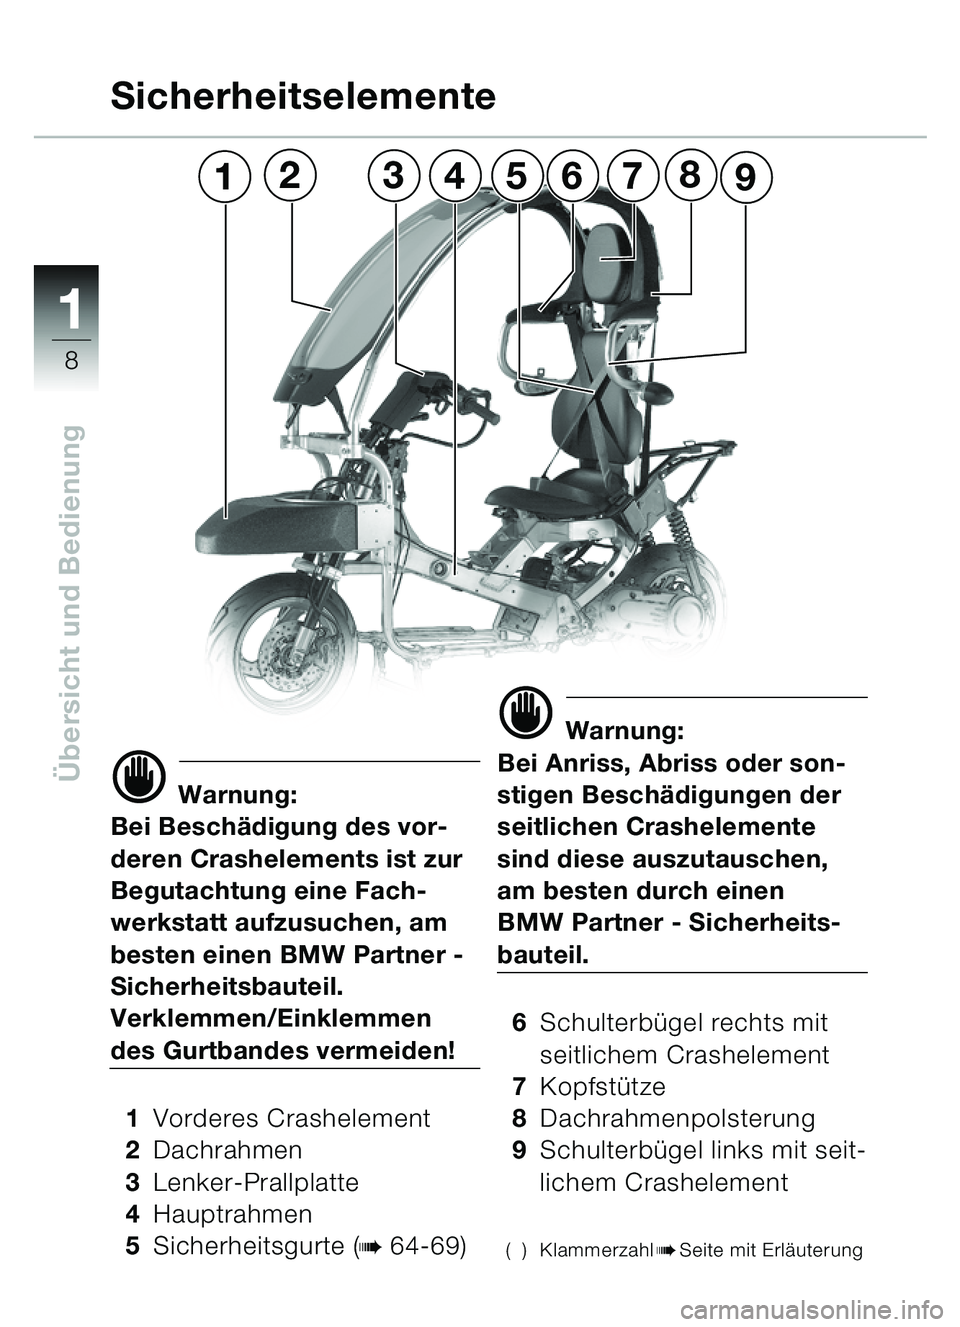 BMW MOTORRAD C1 2000  Betriebsanleitung (in German) 11
8
Übersicht und Bedienungd Warnung:
Bei Besch ädigung des vor-
deren Crashelements ist zur 
Begutachtung eine Fach-
werkstatt aufzusuchen, am 
besten einen BMW Partner - 
Sicherheitsbauteil.
Verk